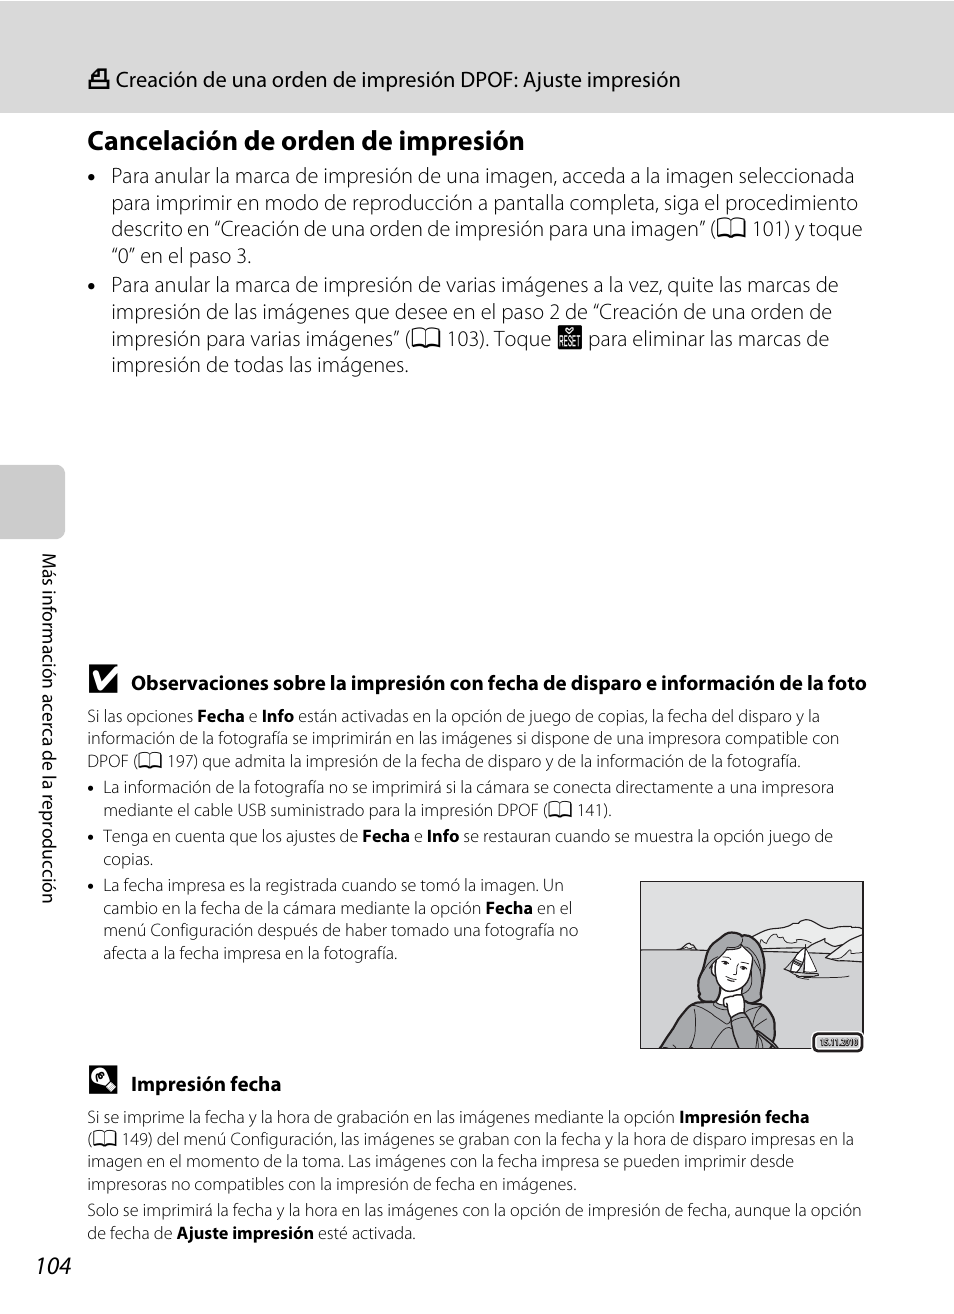 Cancelación de orden de impresión | Nikon Coolpix S1100pj Manual del usuario | Página 118 / 216